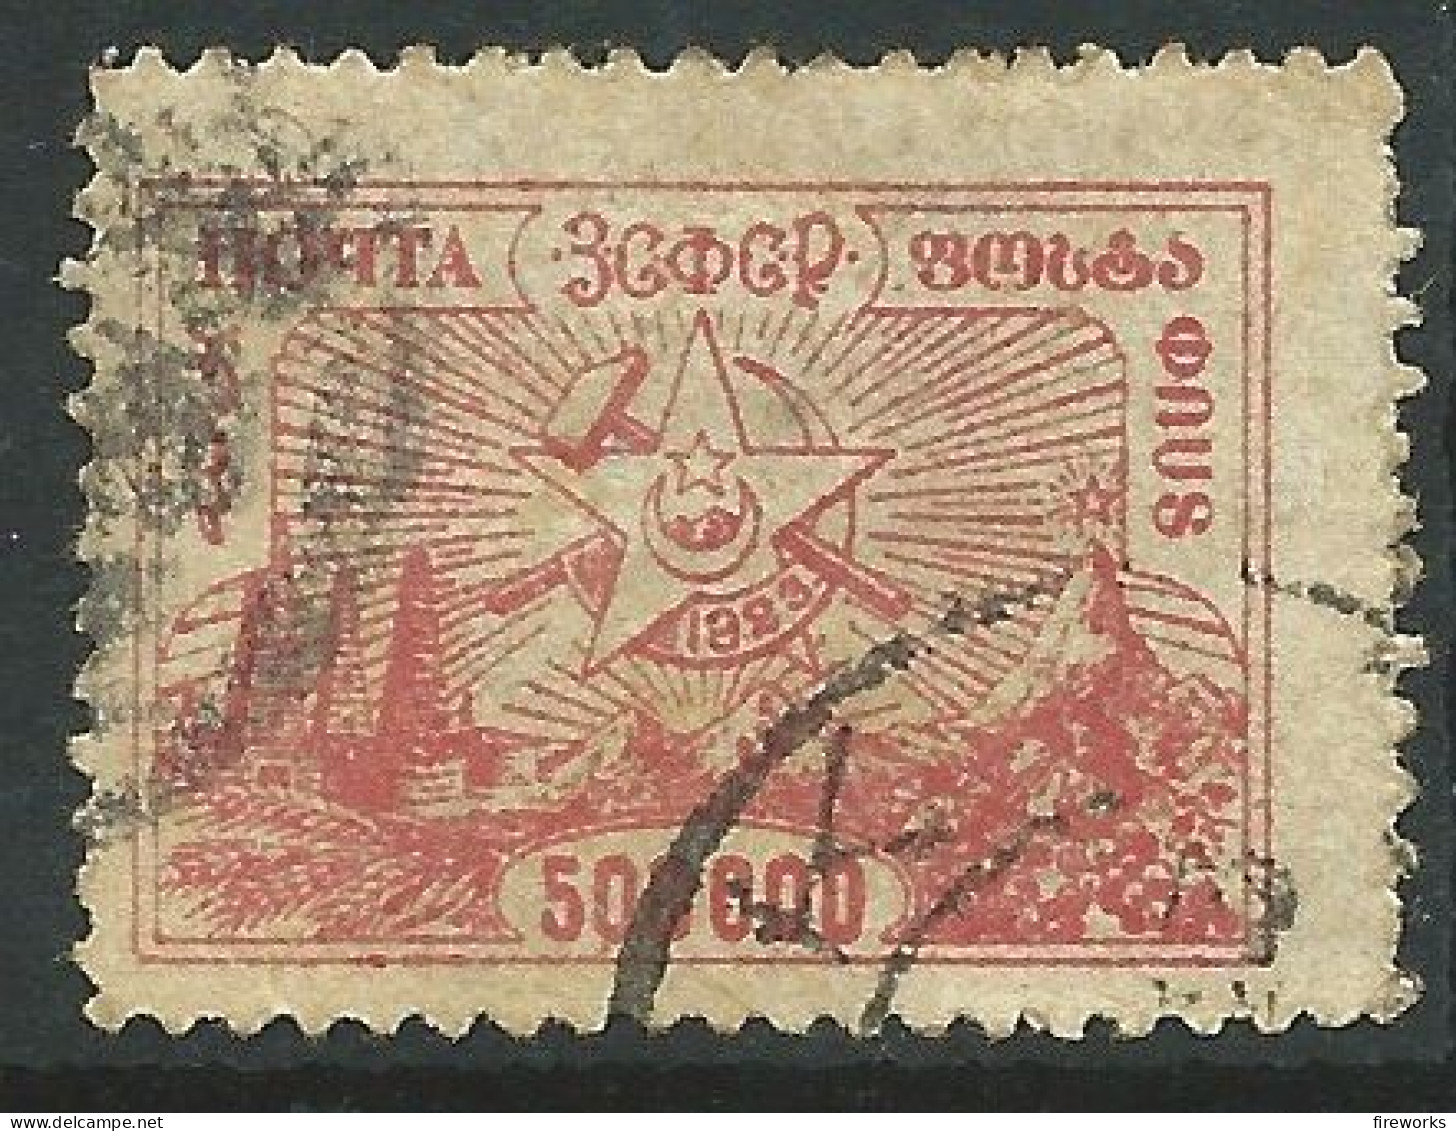 URSS - 1923 Transcaucasie - Oblitérés